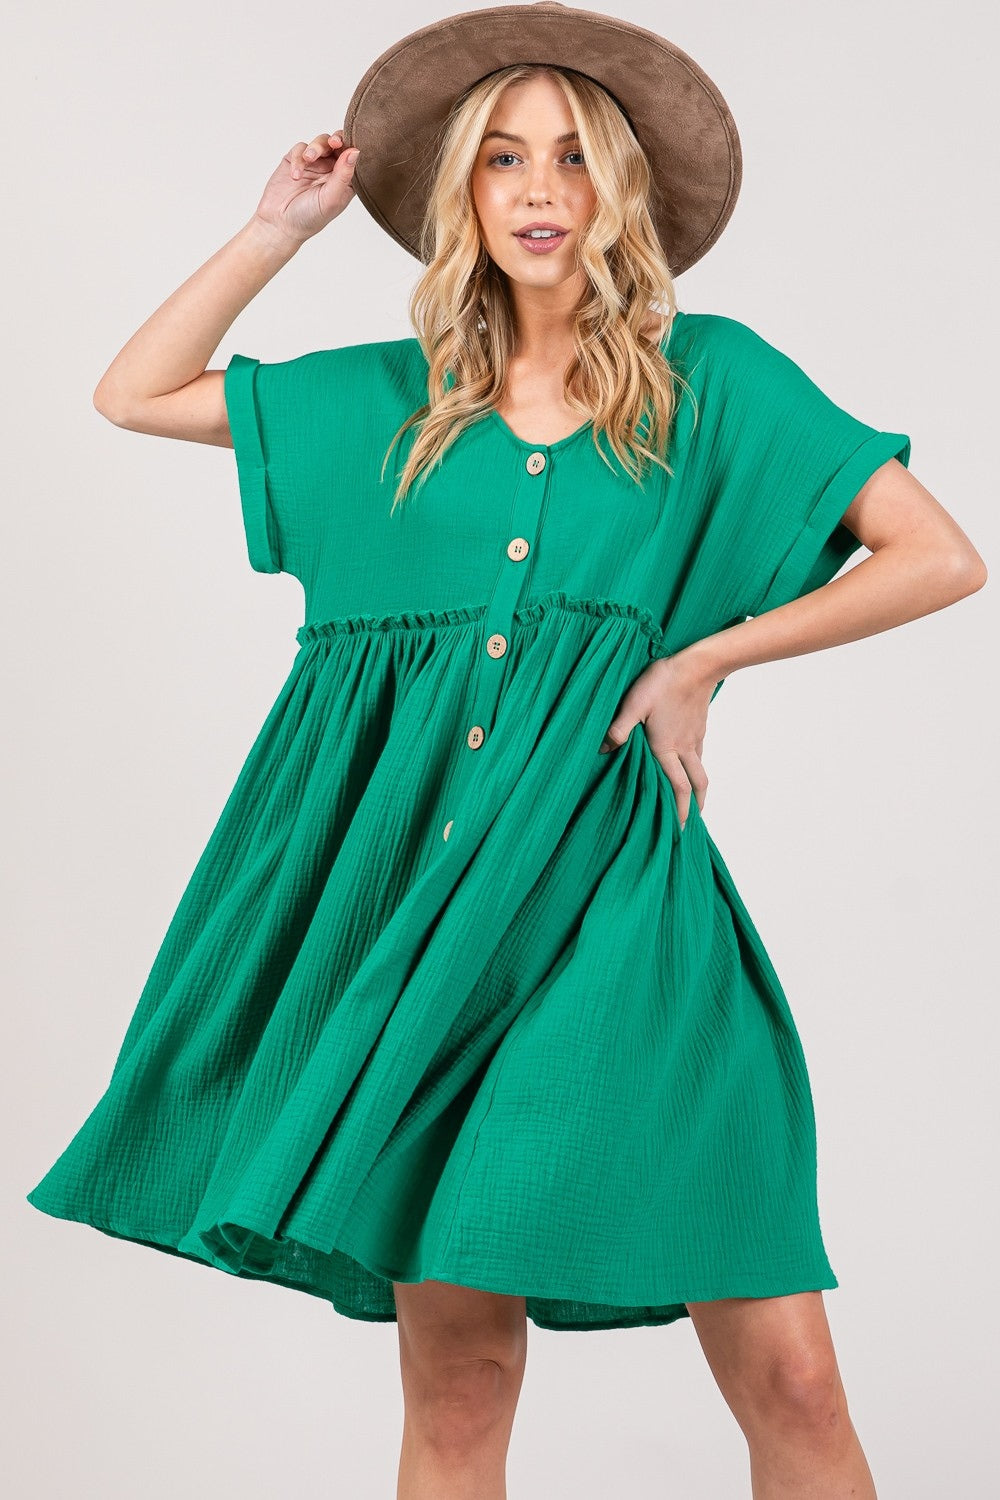 TEEK - Kelly Green Button Up Short Sleeve Dress DRESS TEEK Trend   